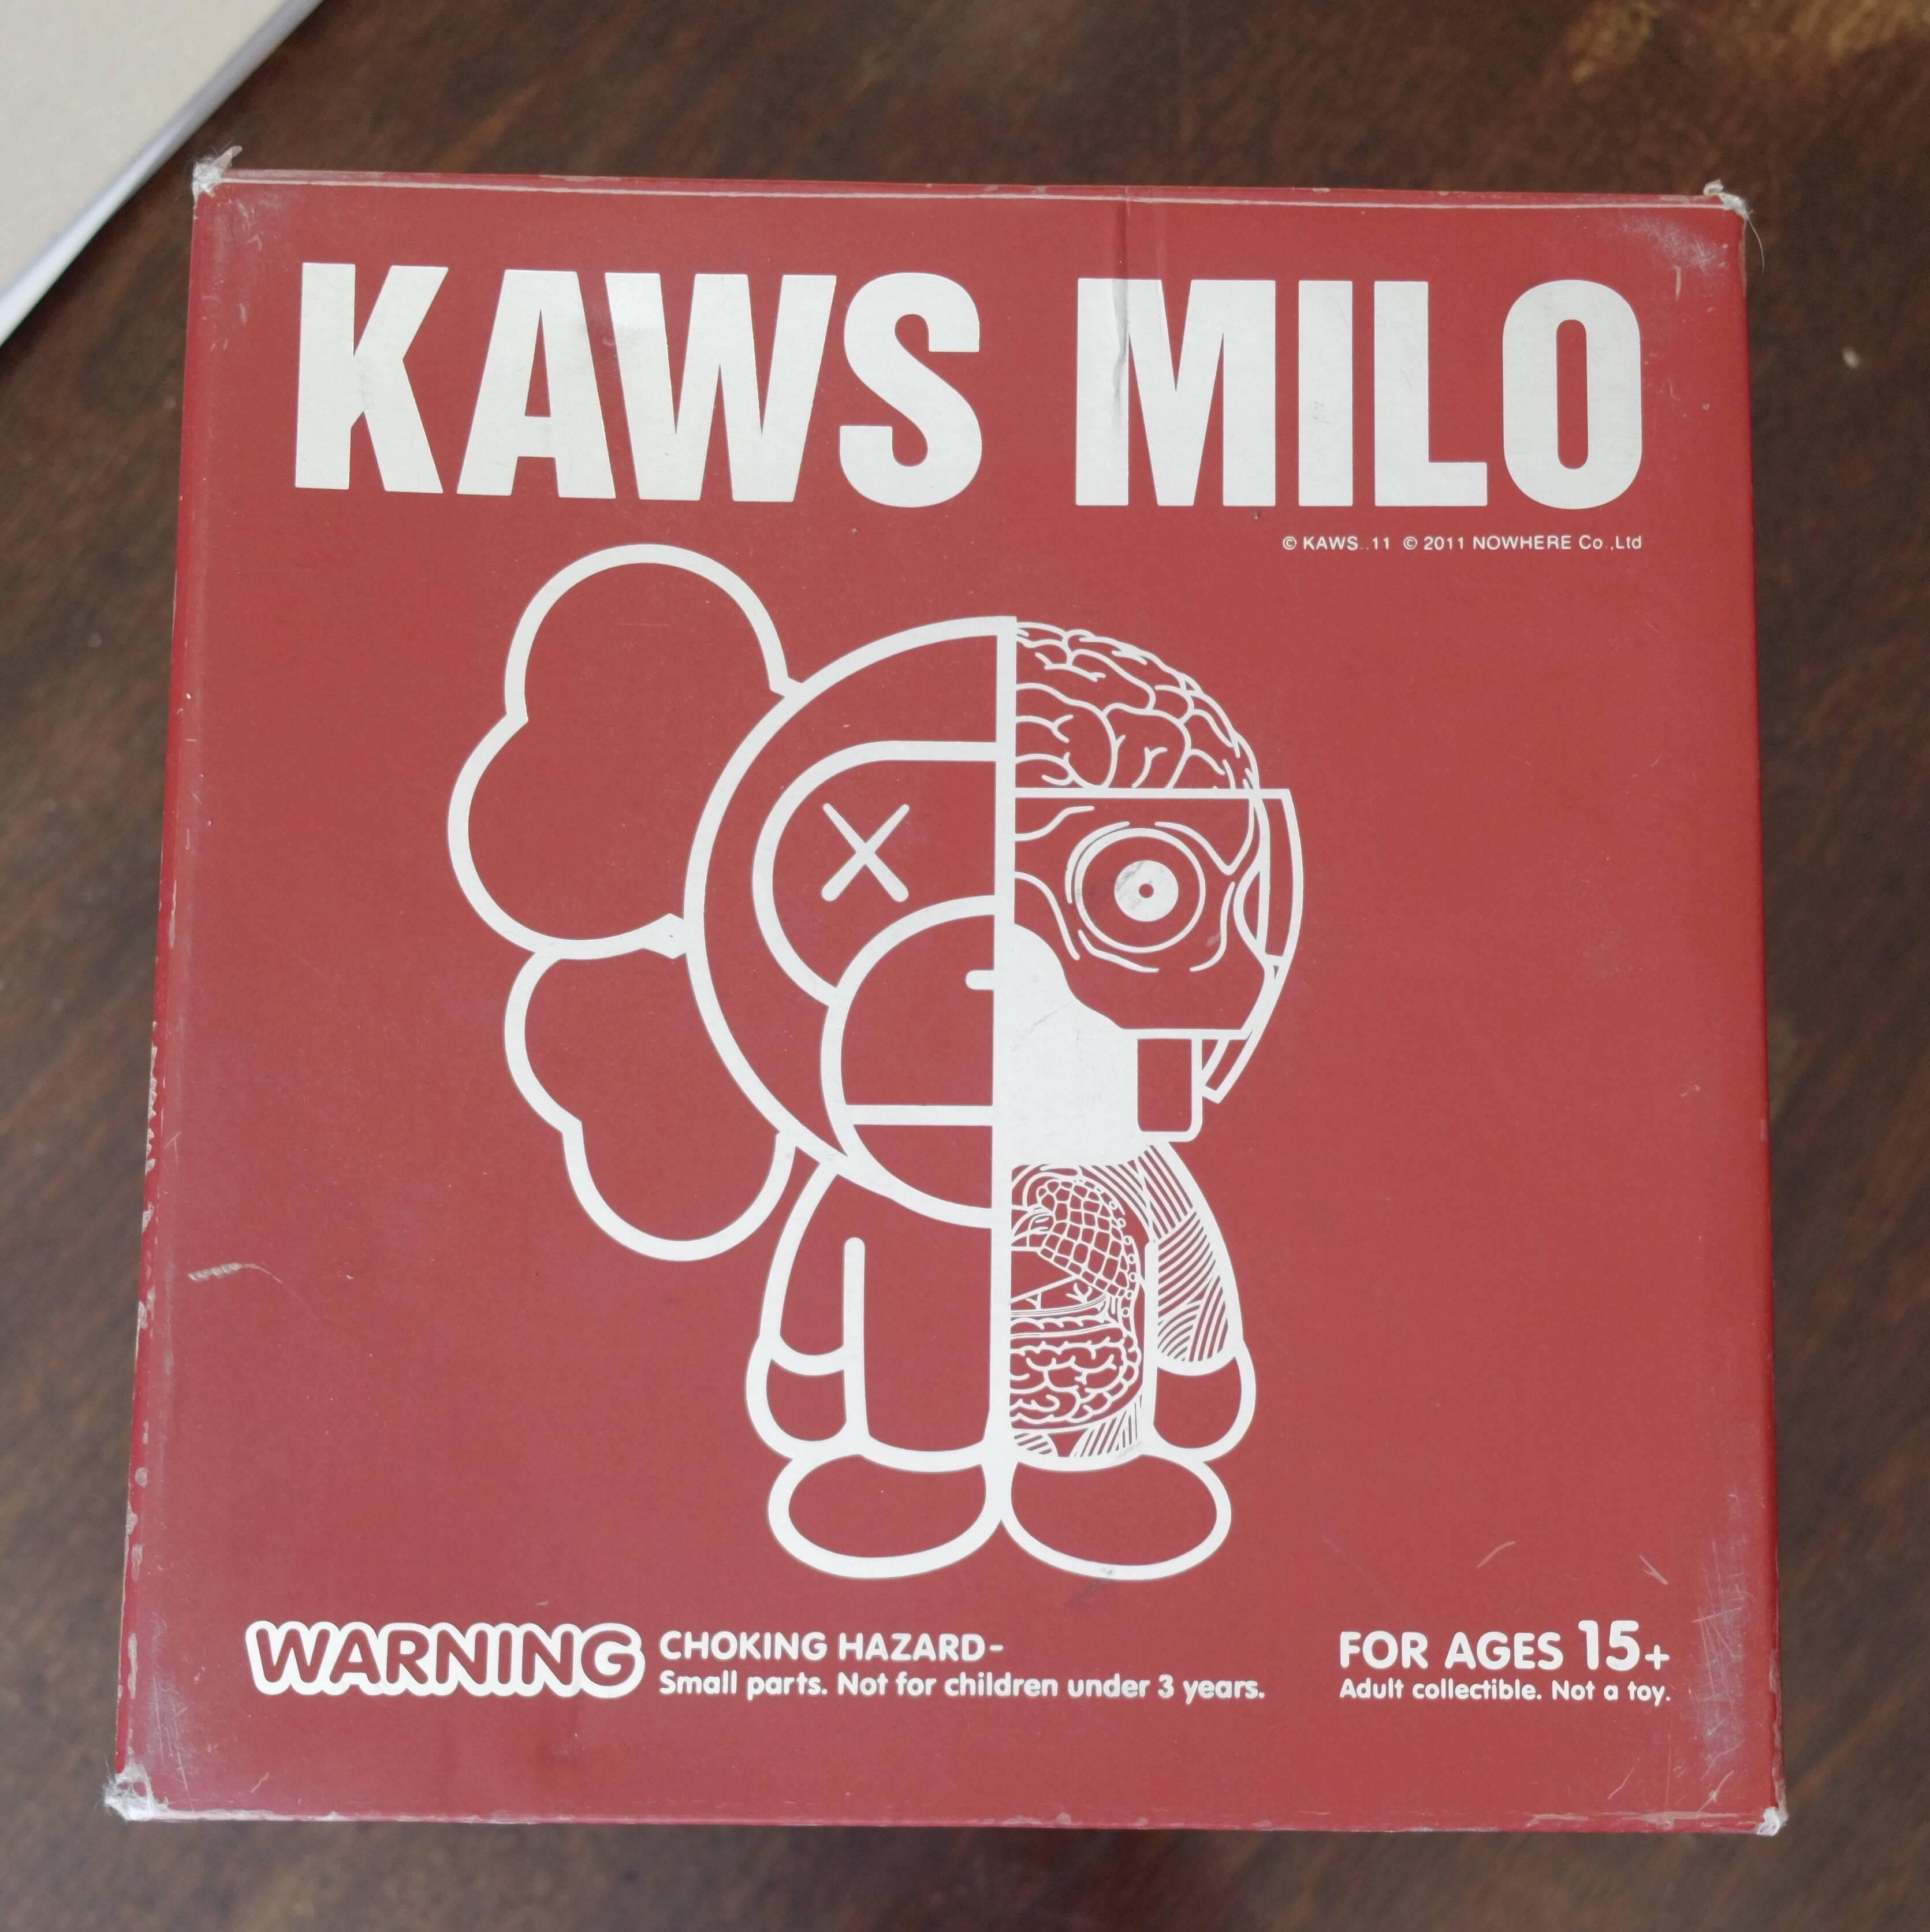 Kaws Milo 2011 'Brown' a Bathing Ape, OriginalFake, Medicom Toy, Original Box For Sale 1